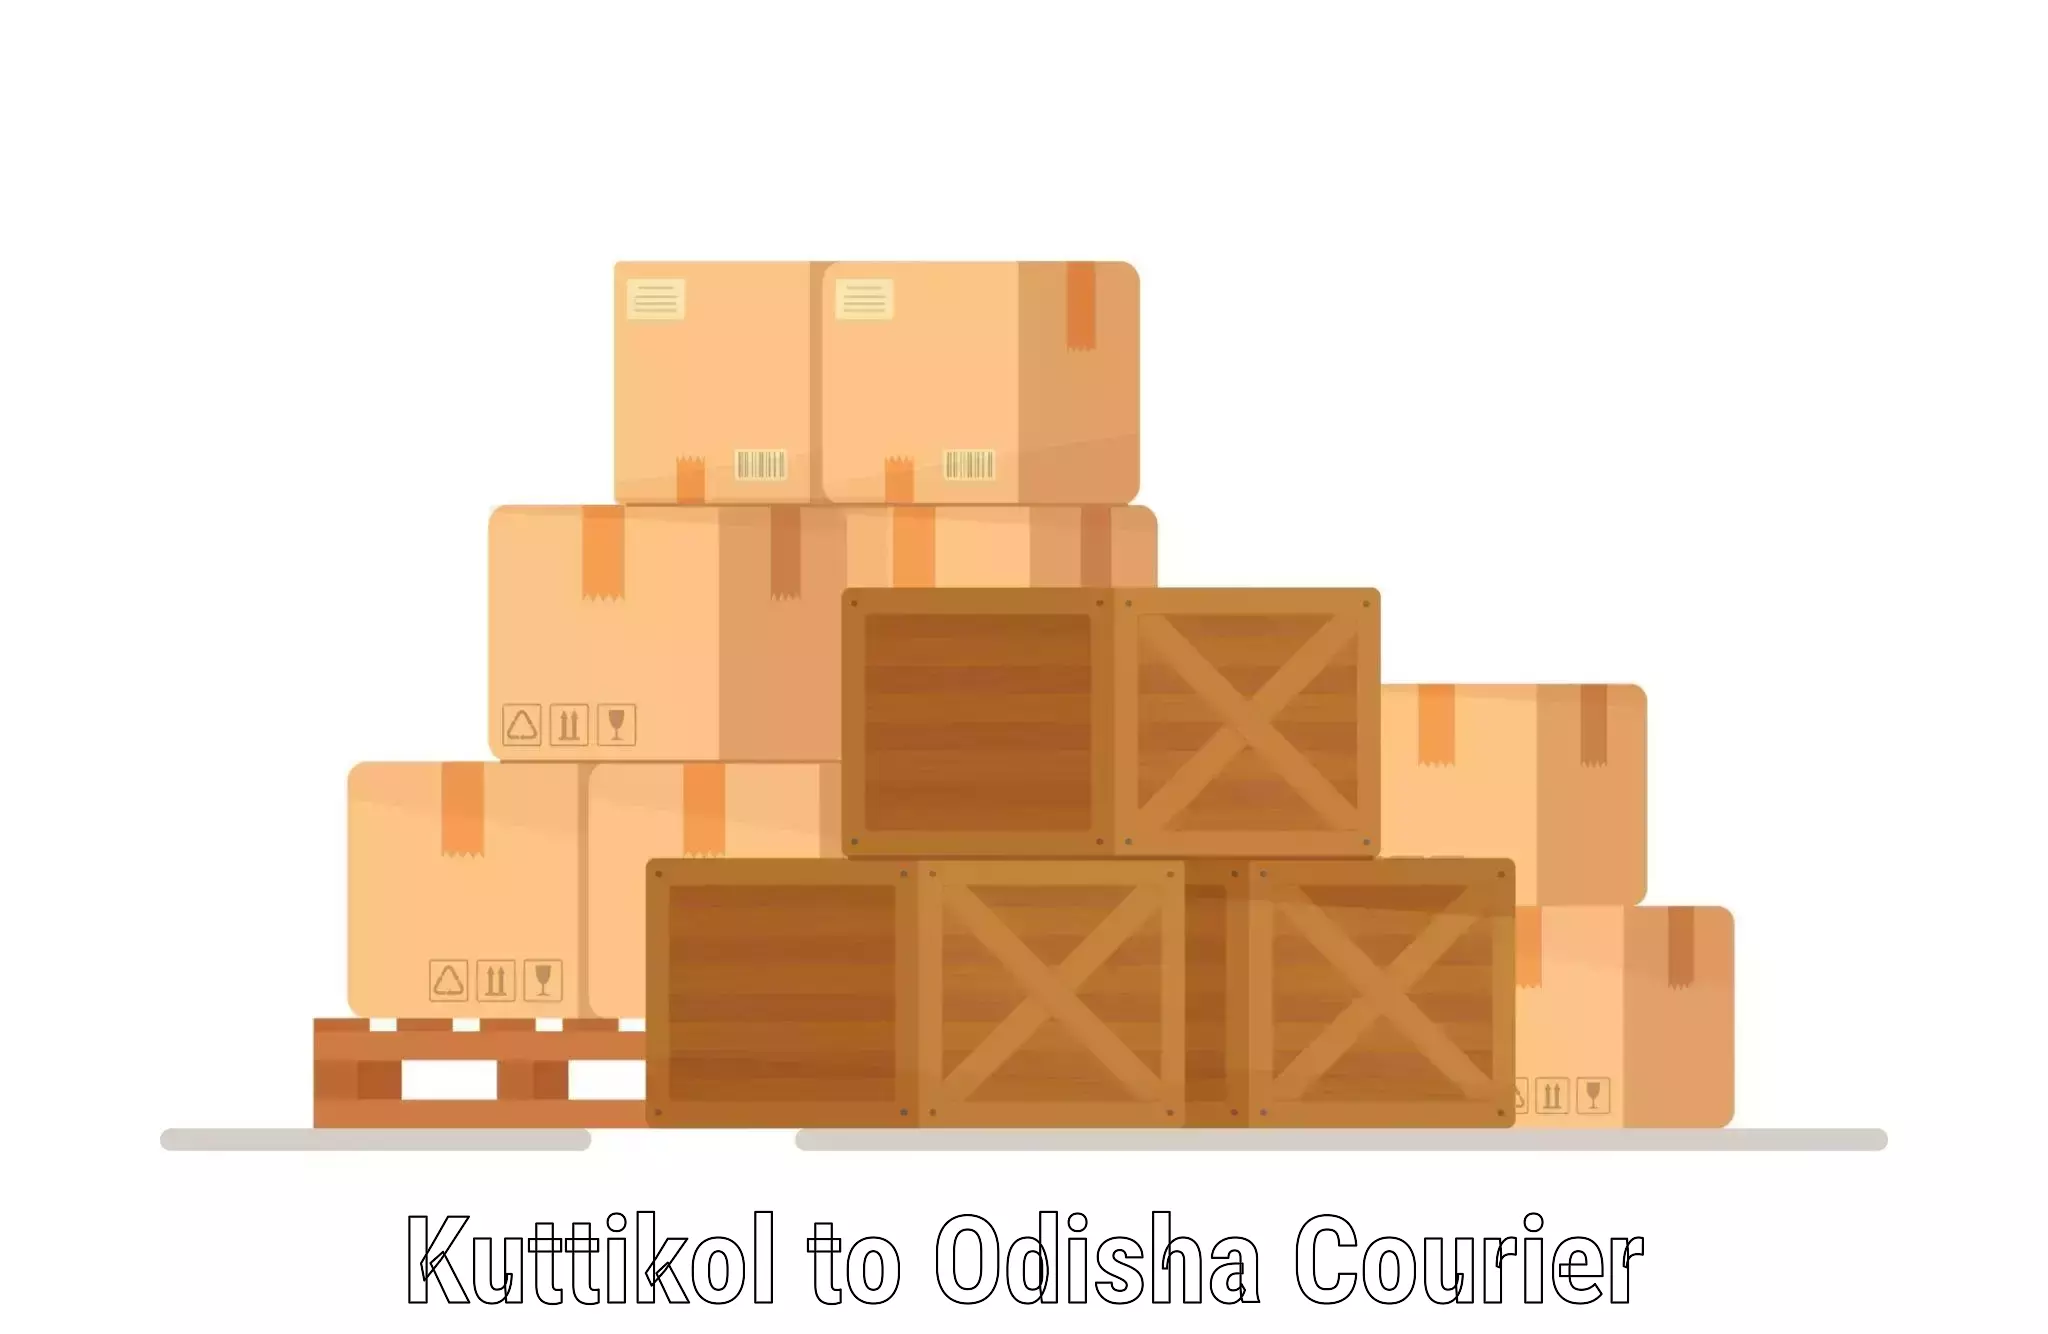 Business shipping needs Kuttikol to Odisha